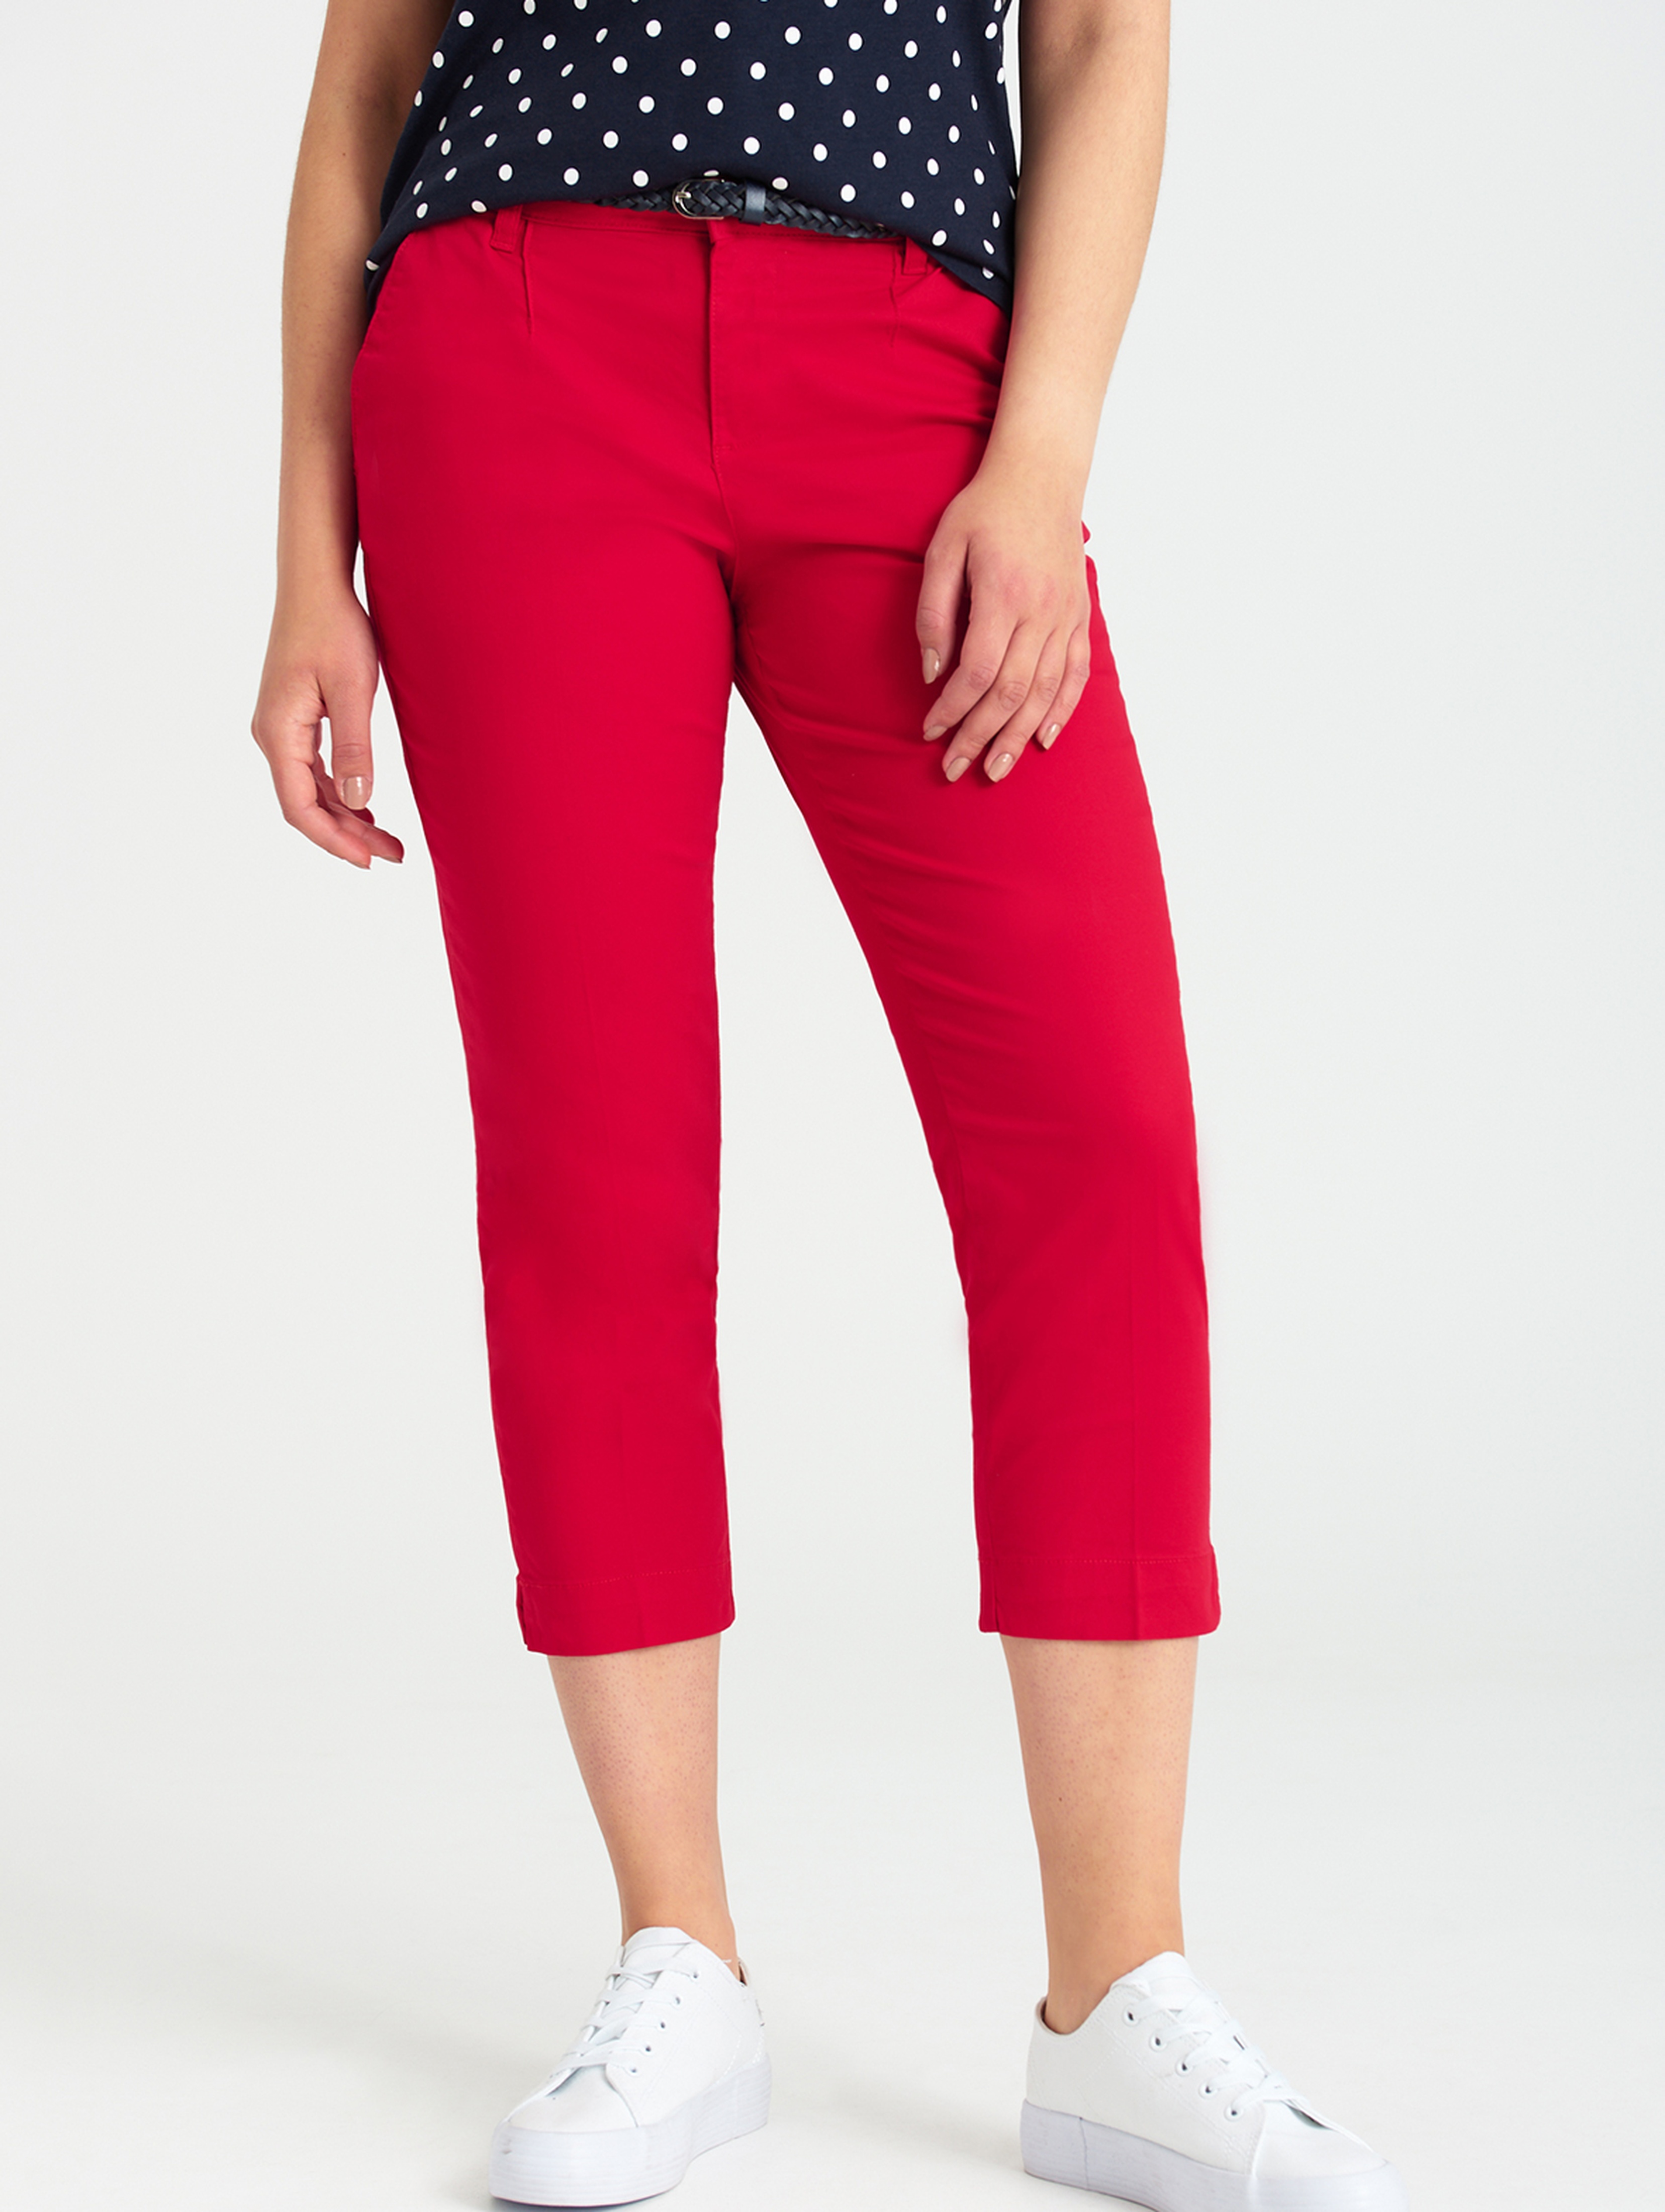 Spodnie klasyczne damskie czerwone